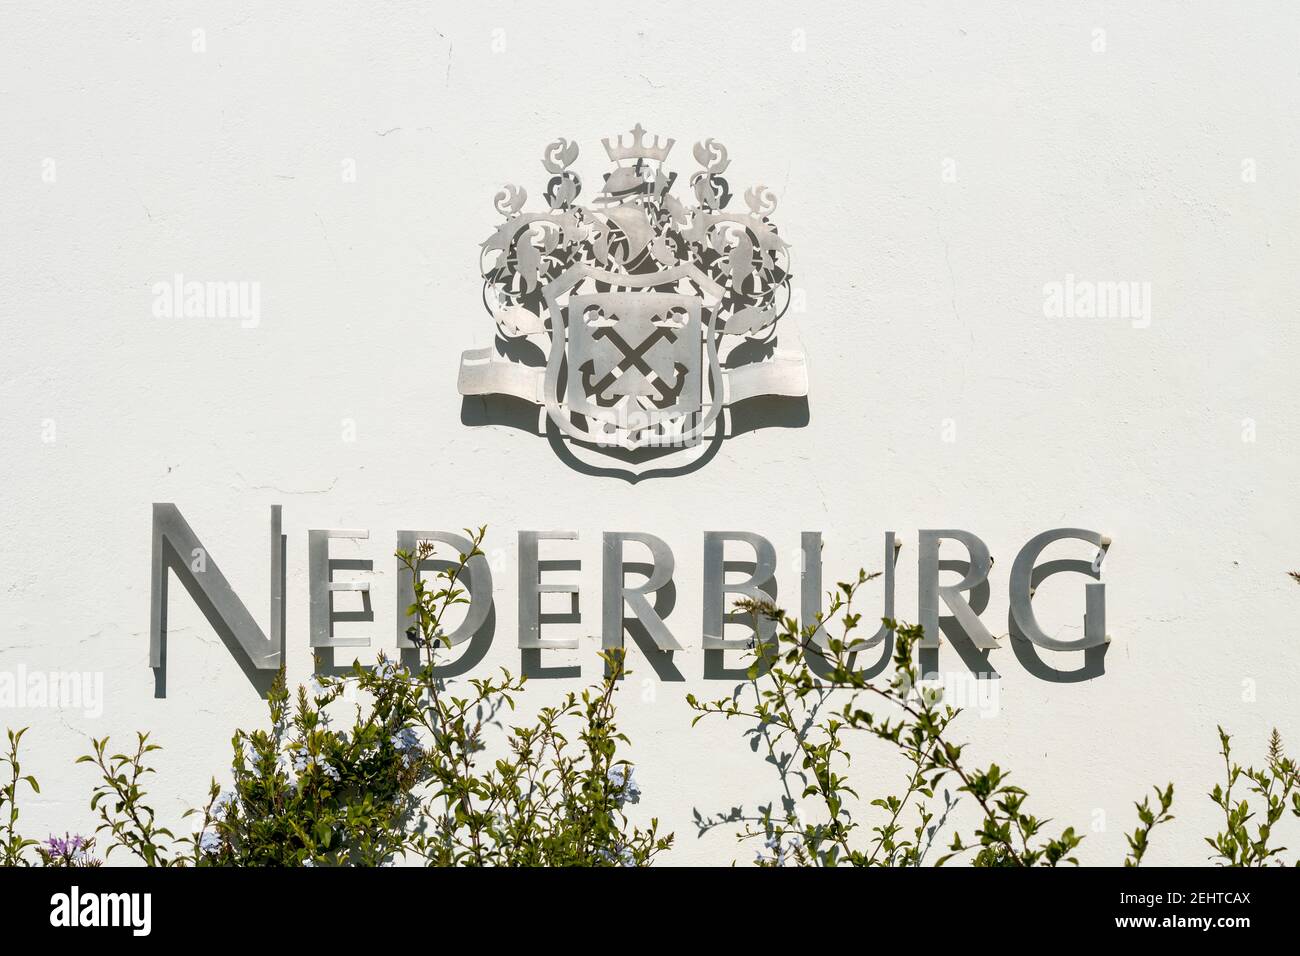 Nederburg Weingutsname an der Wand Eingang in Paarl, Cape Winelands, Südafrika Konzept Weinindustrie Stockfoto